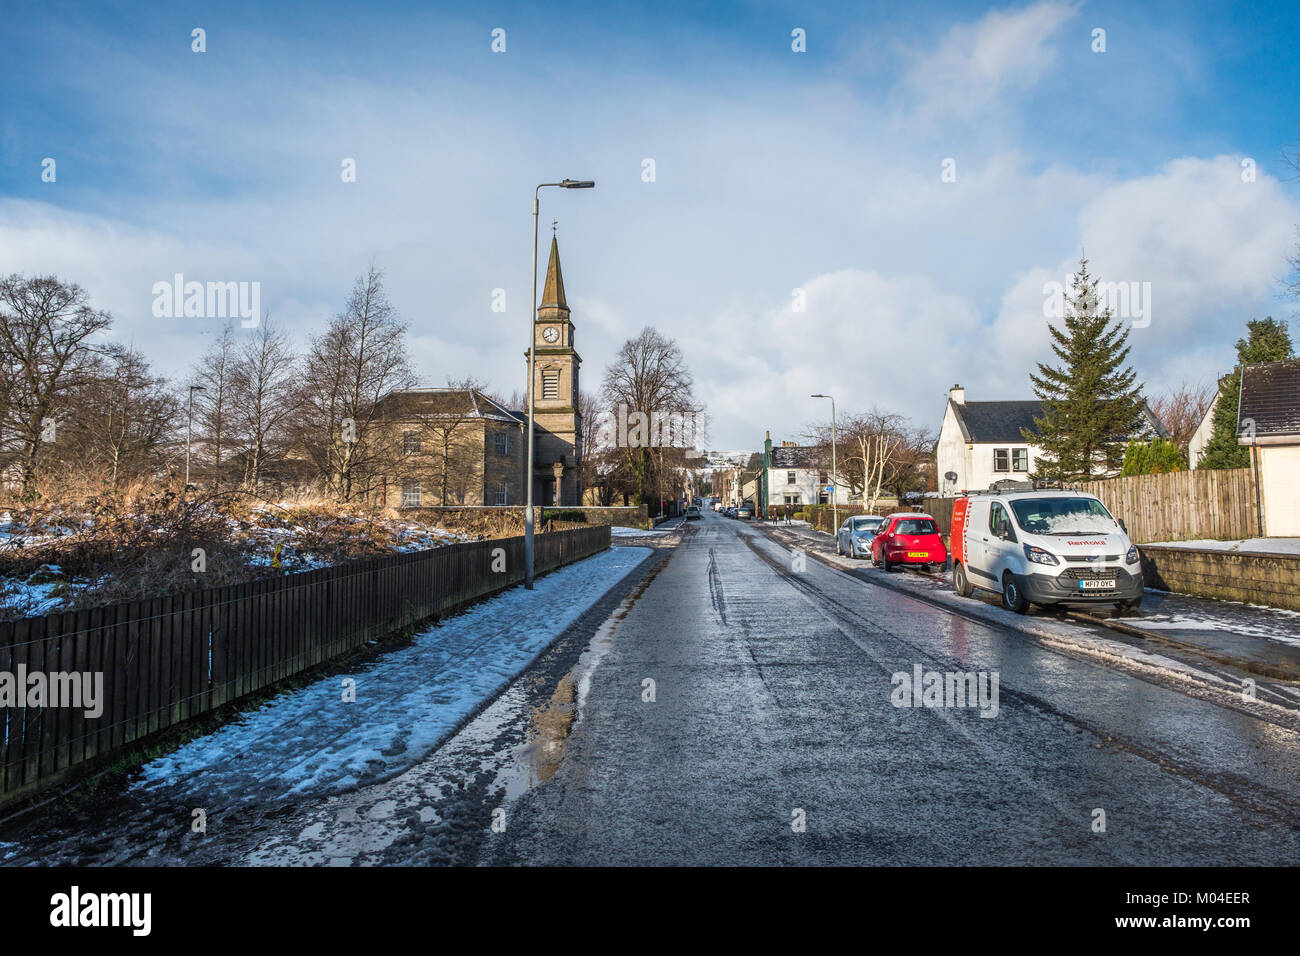 Lochwinnoch, Scotland, UK - 17 janvier 2018 : La rue de l'Église Lochwinnoch gelées et quasi déserte à la mi-journée en hiver. Banque D'Images